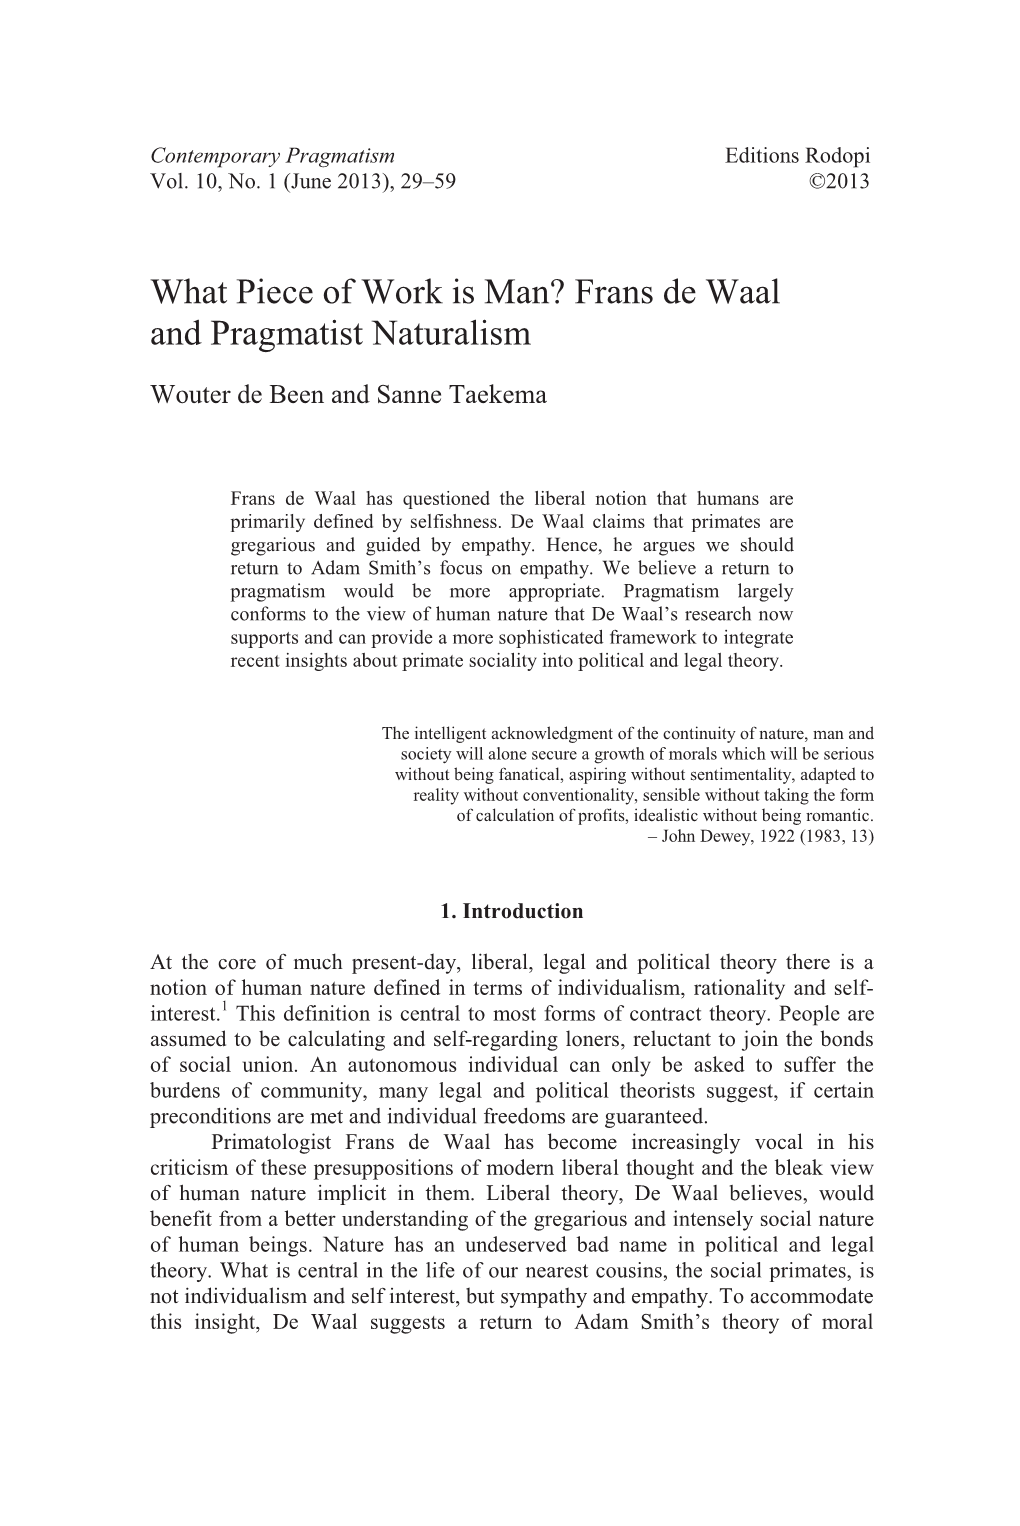 Frans De Waal and Pragmatist Naturalism